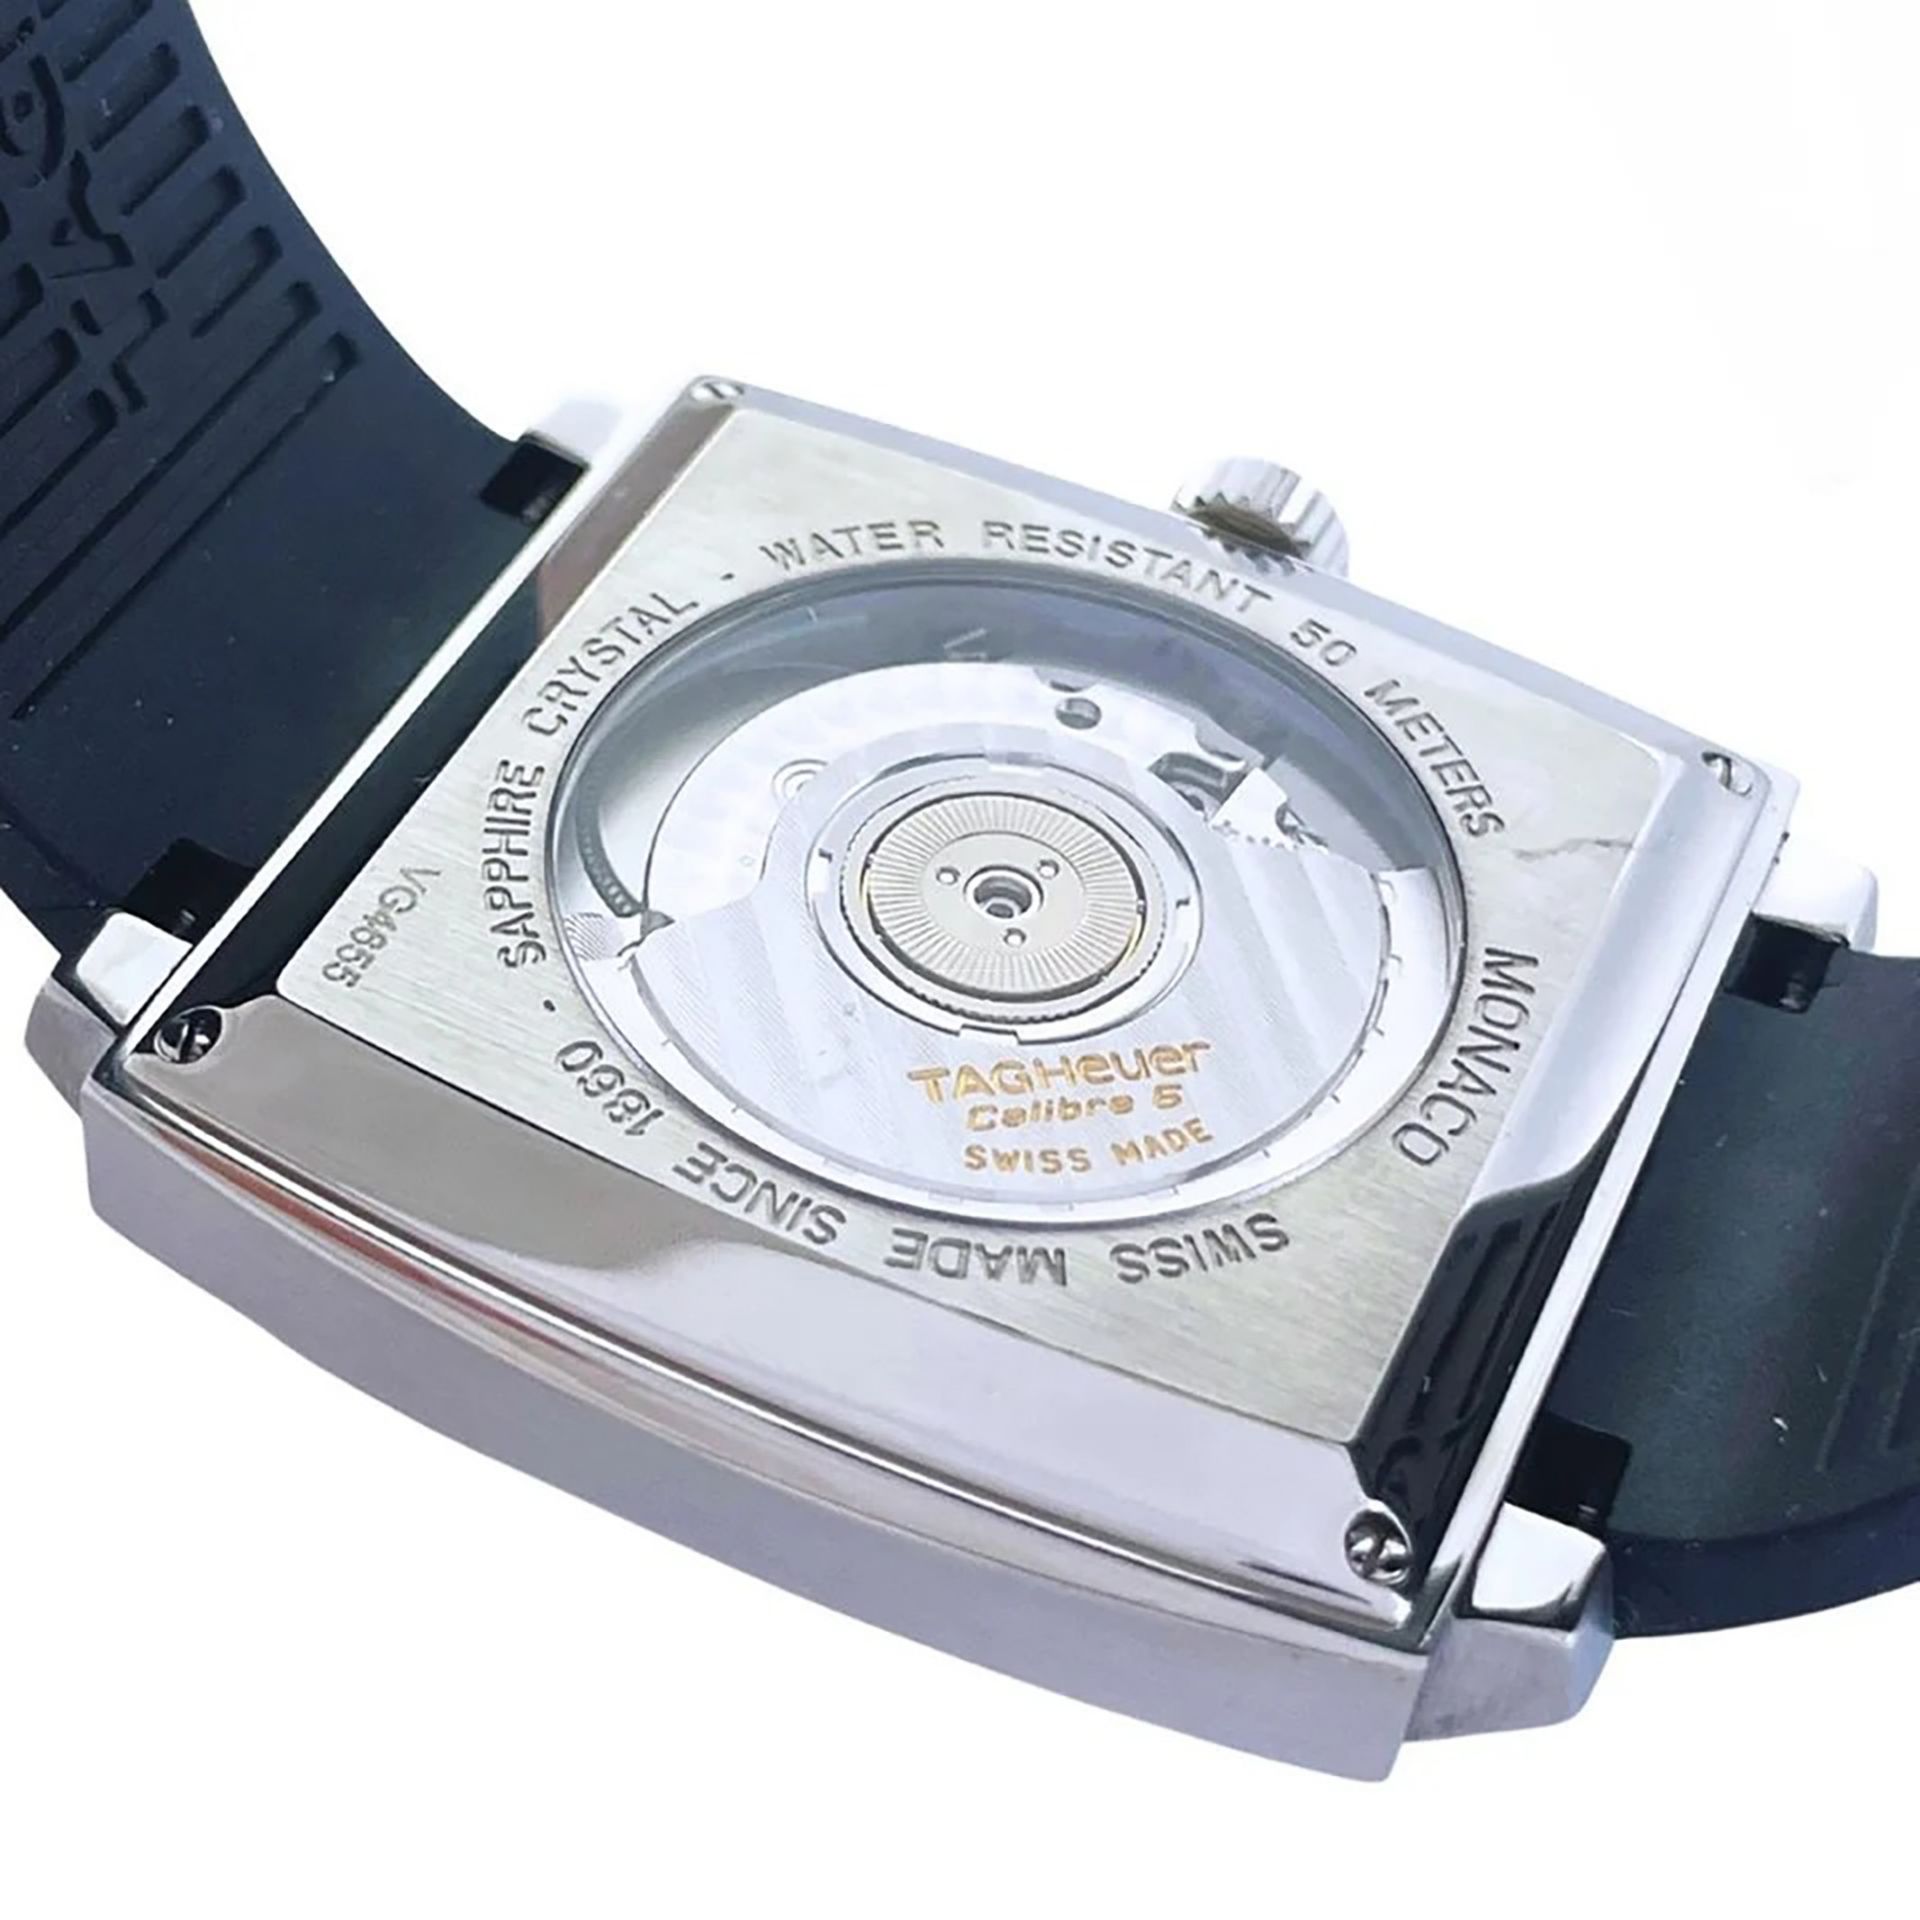 Tag Heuer Monaco Deep Blue model wristwatch in steel, for men, year 2007 - Image 6 of 7